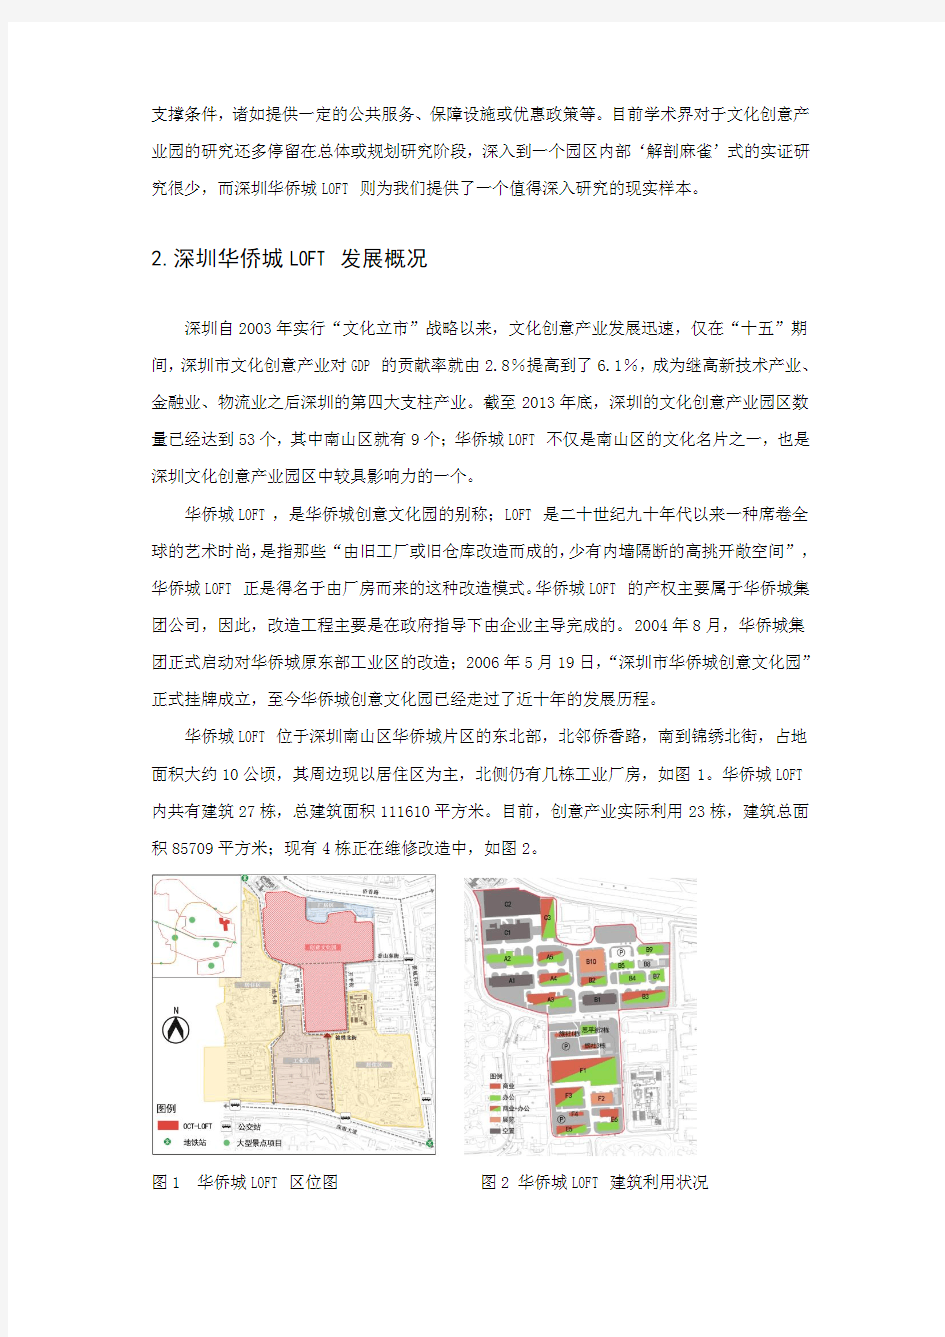 文化创意产业空间集聚特征研究——以深圳华侨城LOFT为例